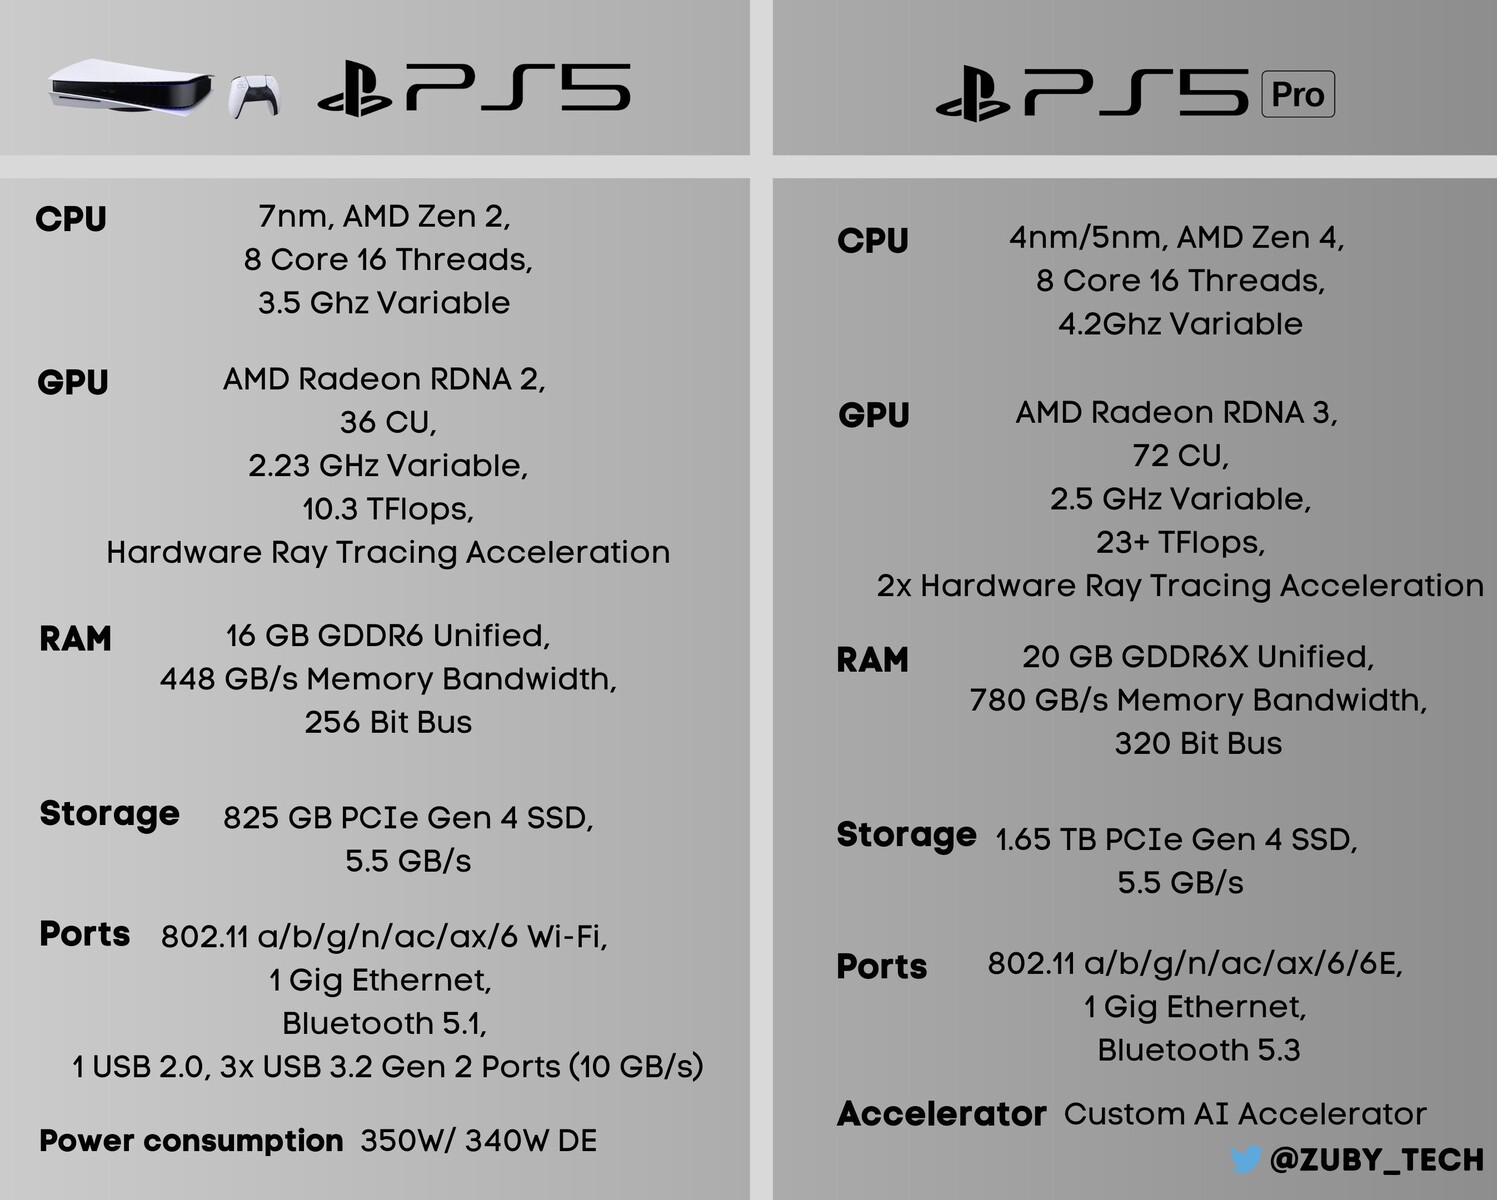 O vazamento das novas especificações do PS5 Pro sugere um aumento